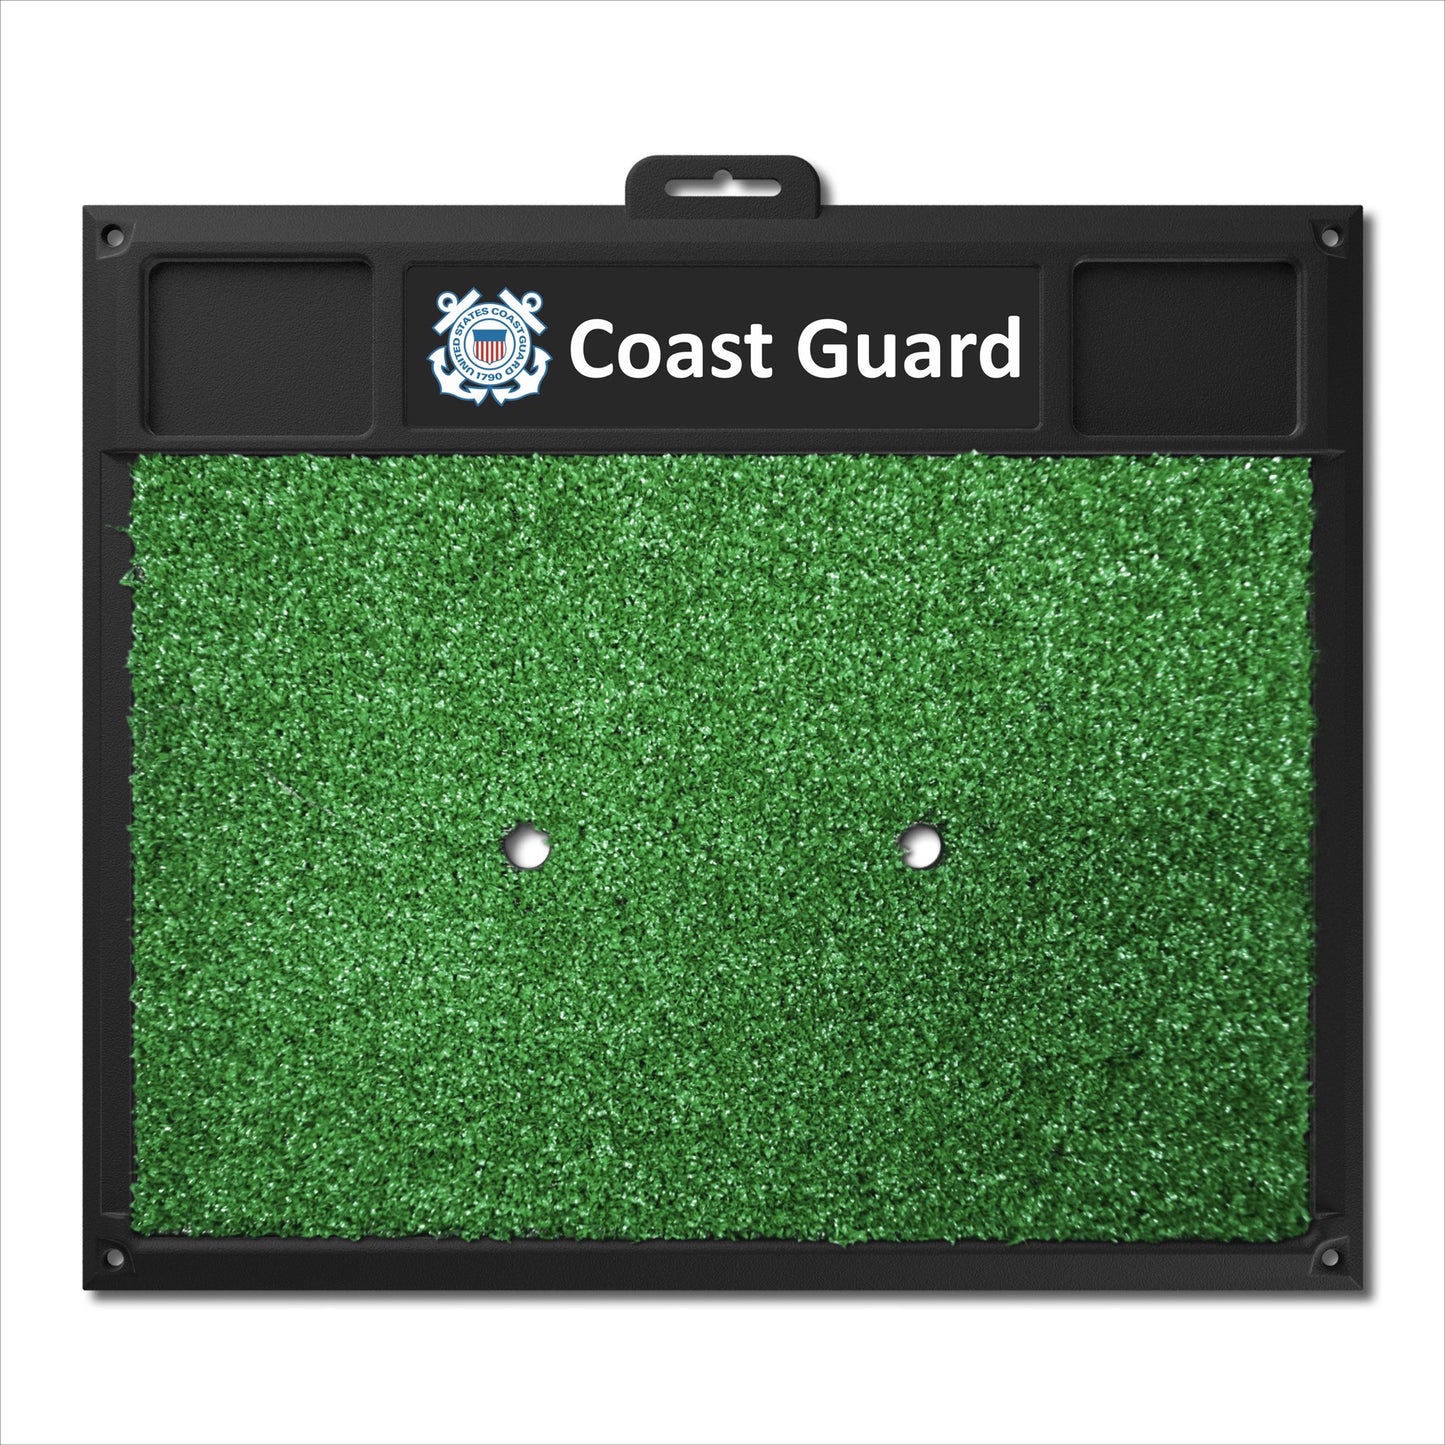 U.S. Coast Guard Golf Hitting Mat by Fanmats